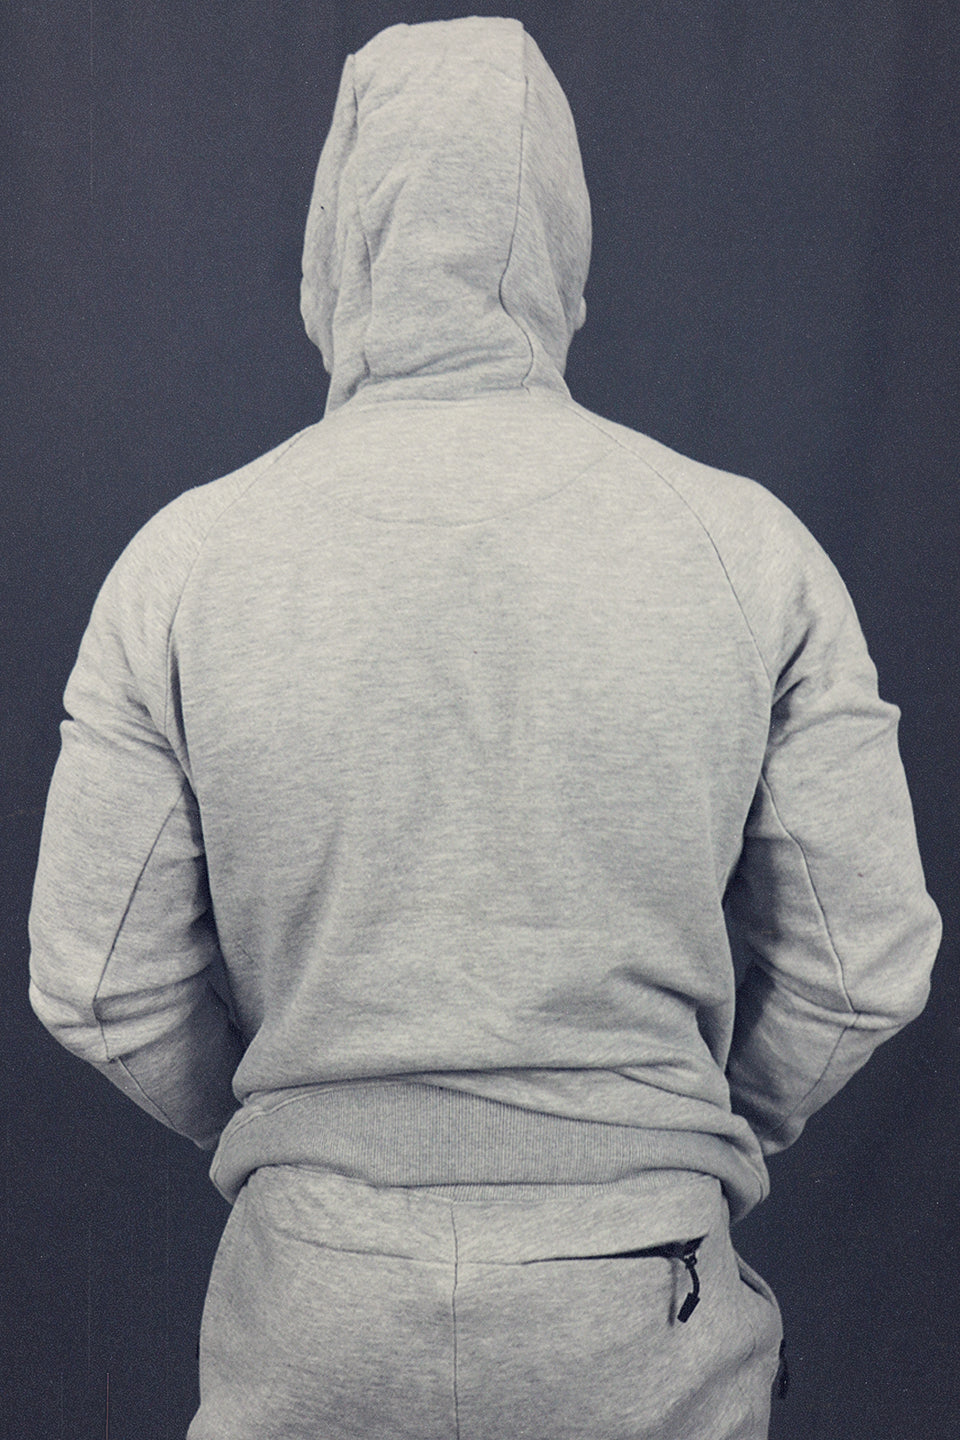 back view of hood on the Men's Heather Grey Fleece Zip Up Hoodie Sweatshirt Jogger Top To Match Sneakers